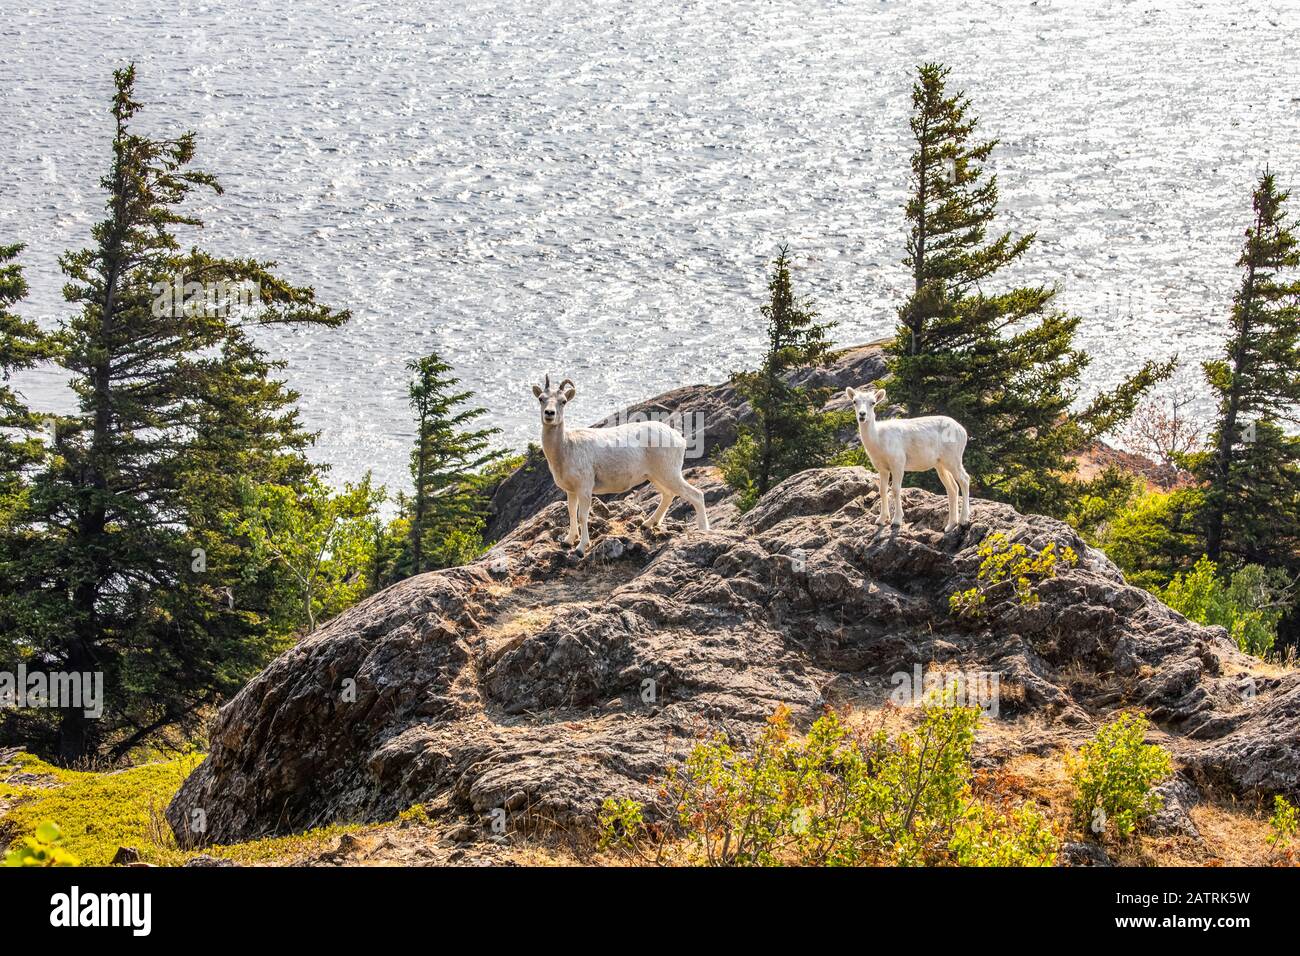 La brebis et l'agneau de Dall (Ovis dalli) errent dans les crêtes rocheuses pour se nourrir tout en surplombant les eaux océaniques du bras Turnagain dans le sud-centre de l'Alaska Sout... Banque D'Images